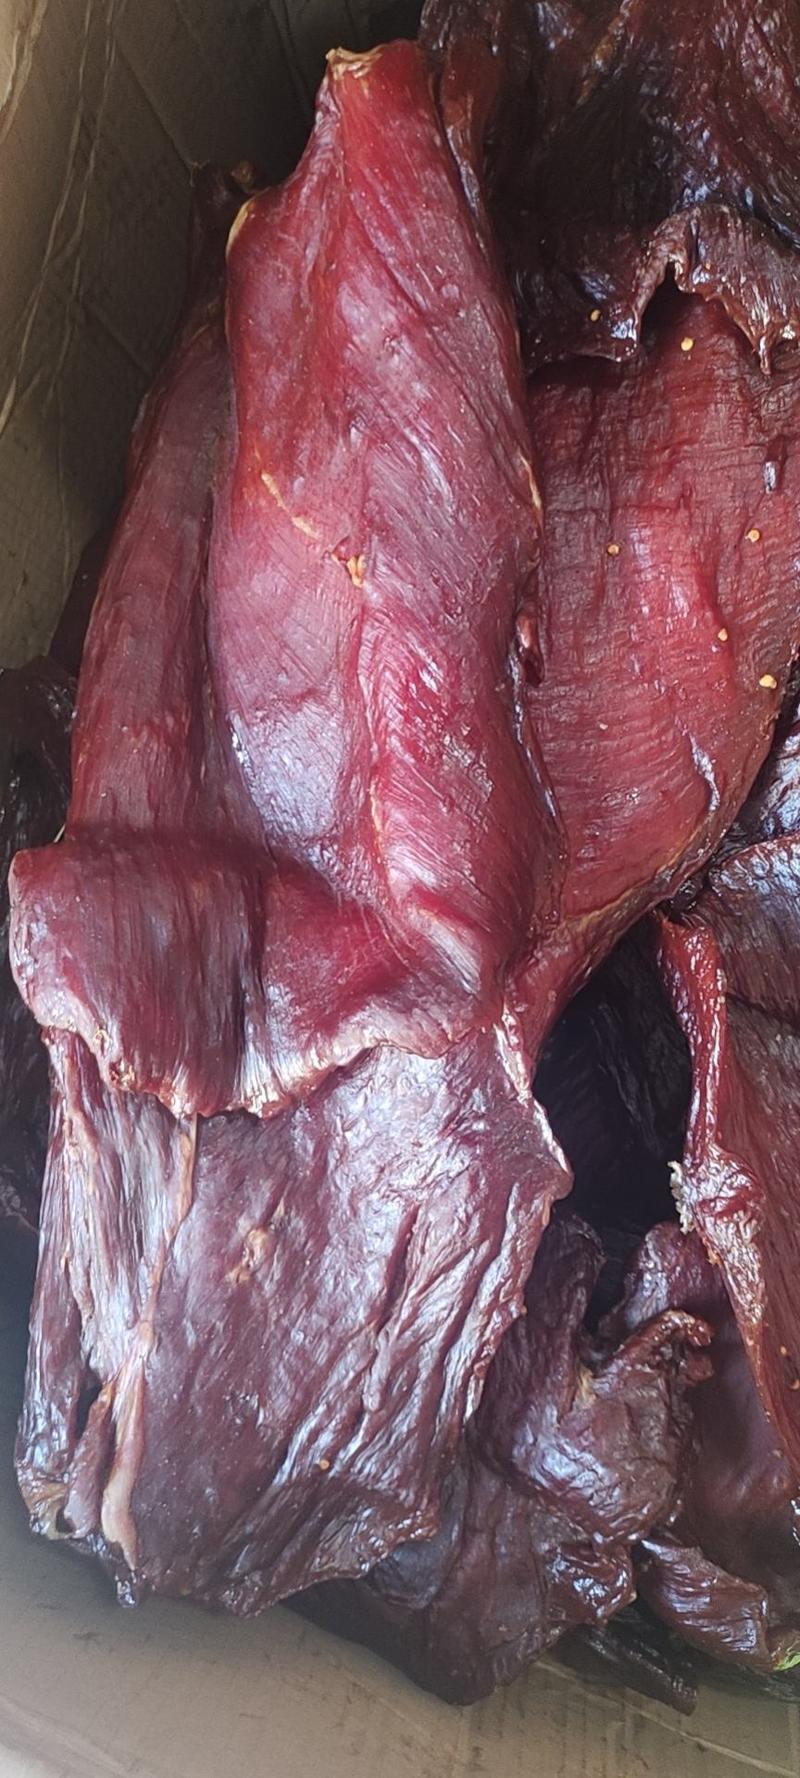 里脊大块肉散装土特产批发70斤一件两种口味